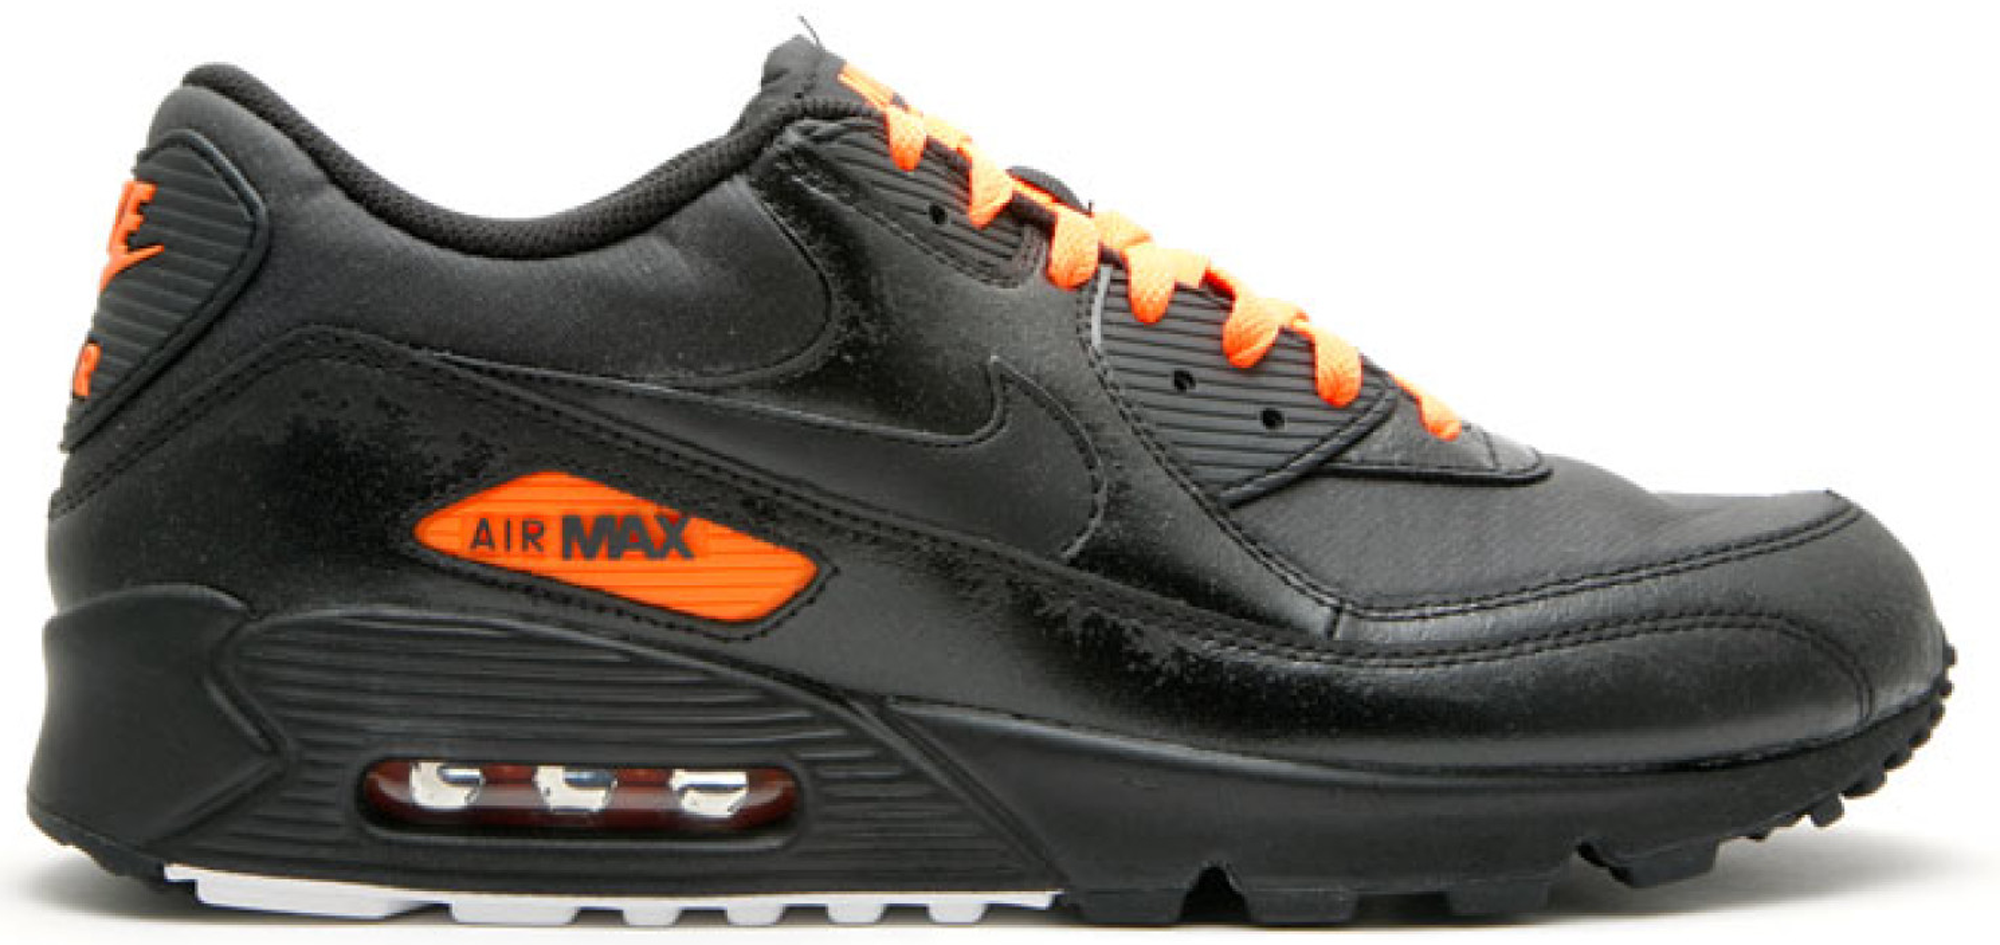 black and orange air max 90s